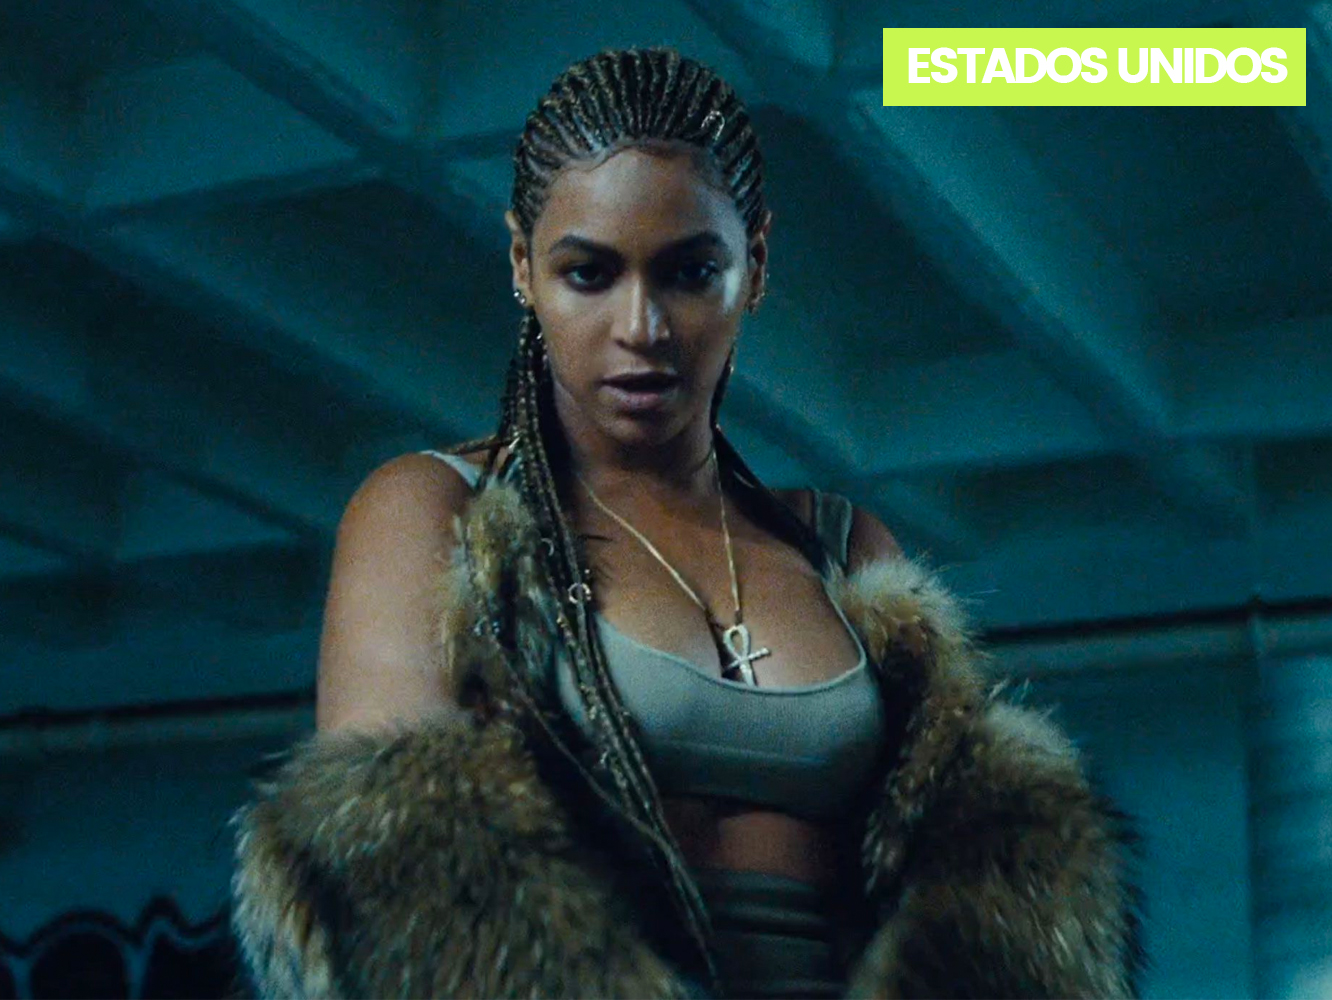  US | Beyoncé vuelve a sacar brillo a ‘Lemonade’, y ocupa dos posiciones en el top10 de álbumes